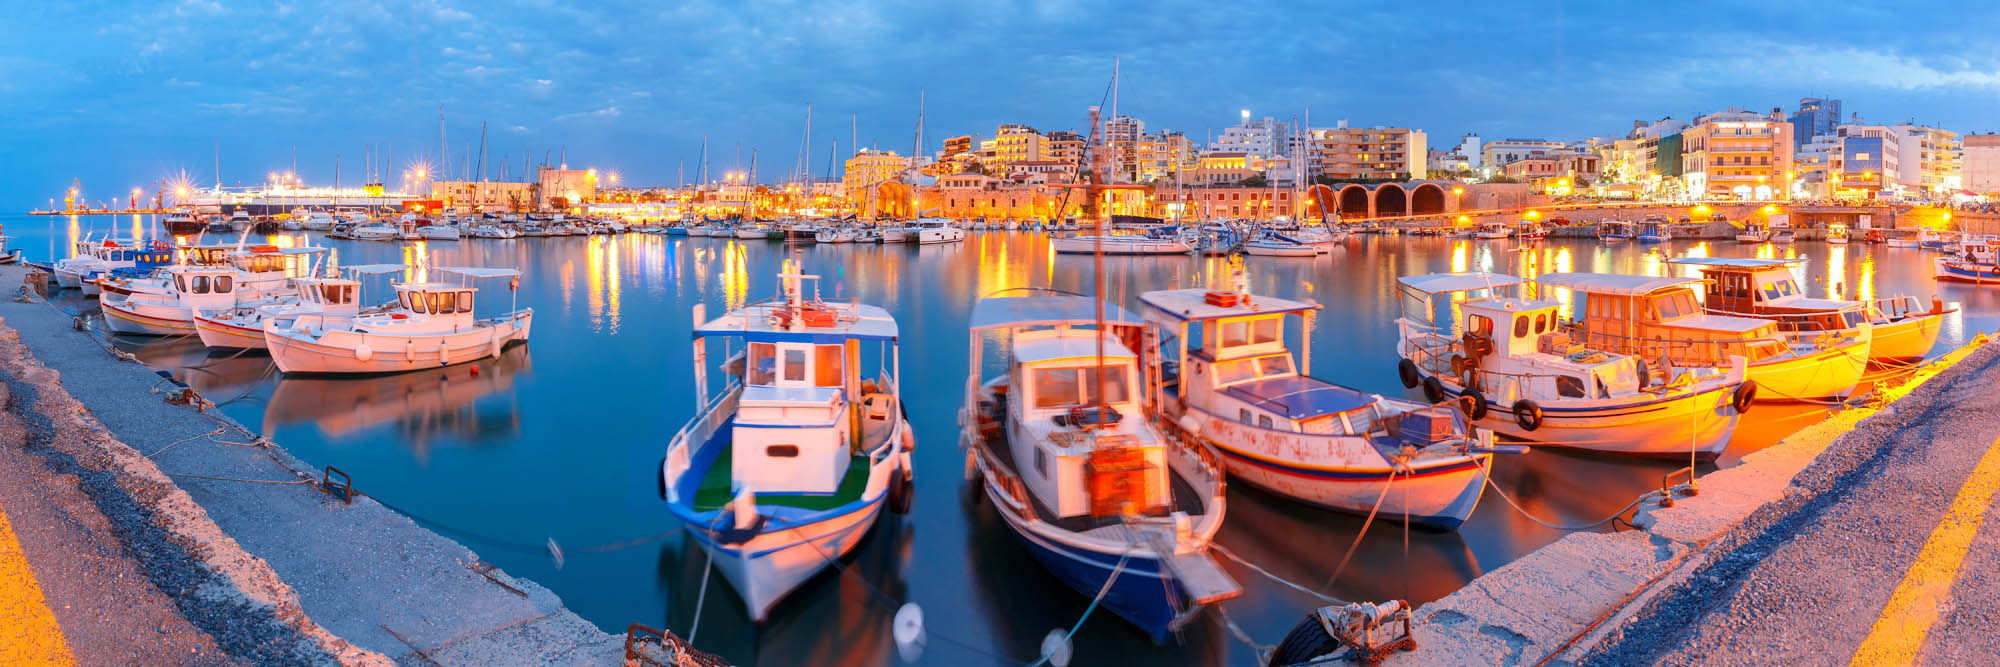 widok na posrt wenecki w heraklionie oświetlony światłami wielkiego miasta, oraz łódki stojące w marinie, wieczorna panorama